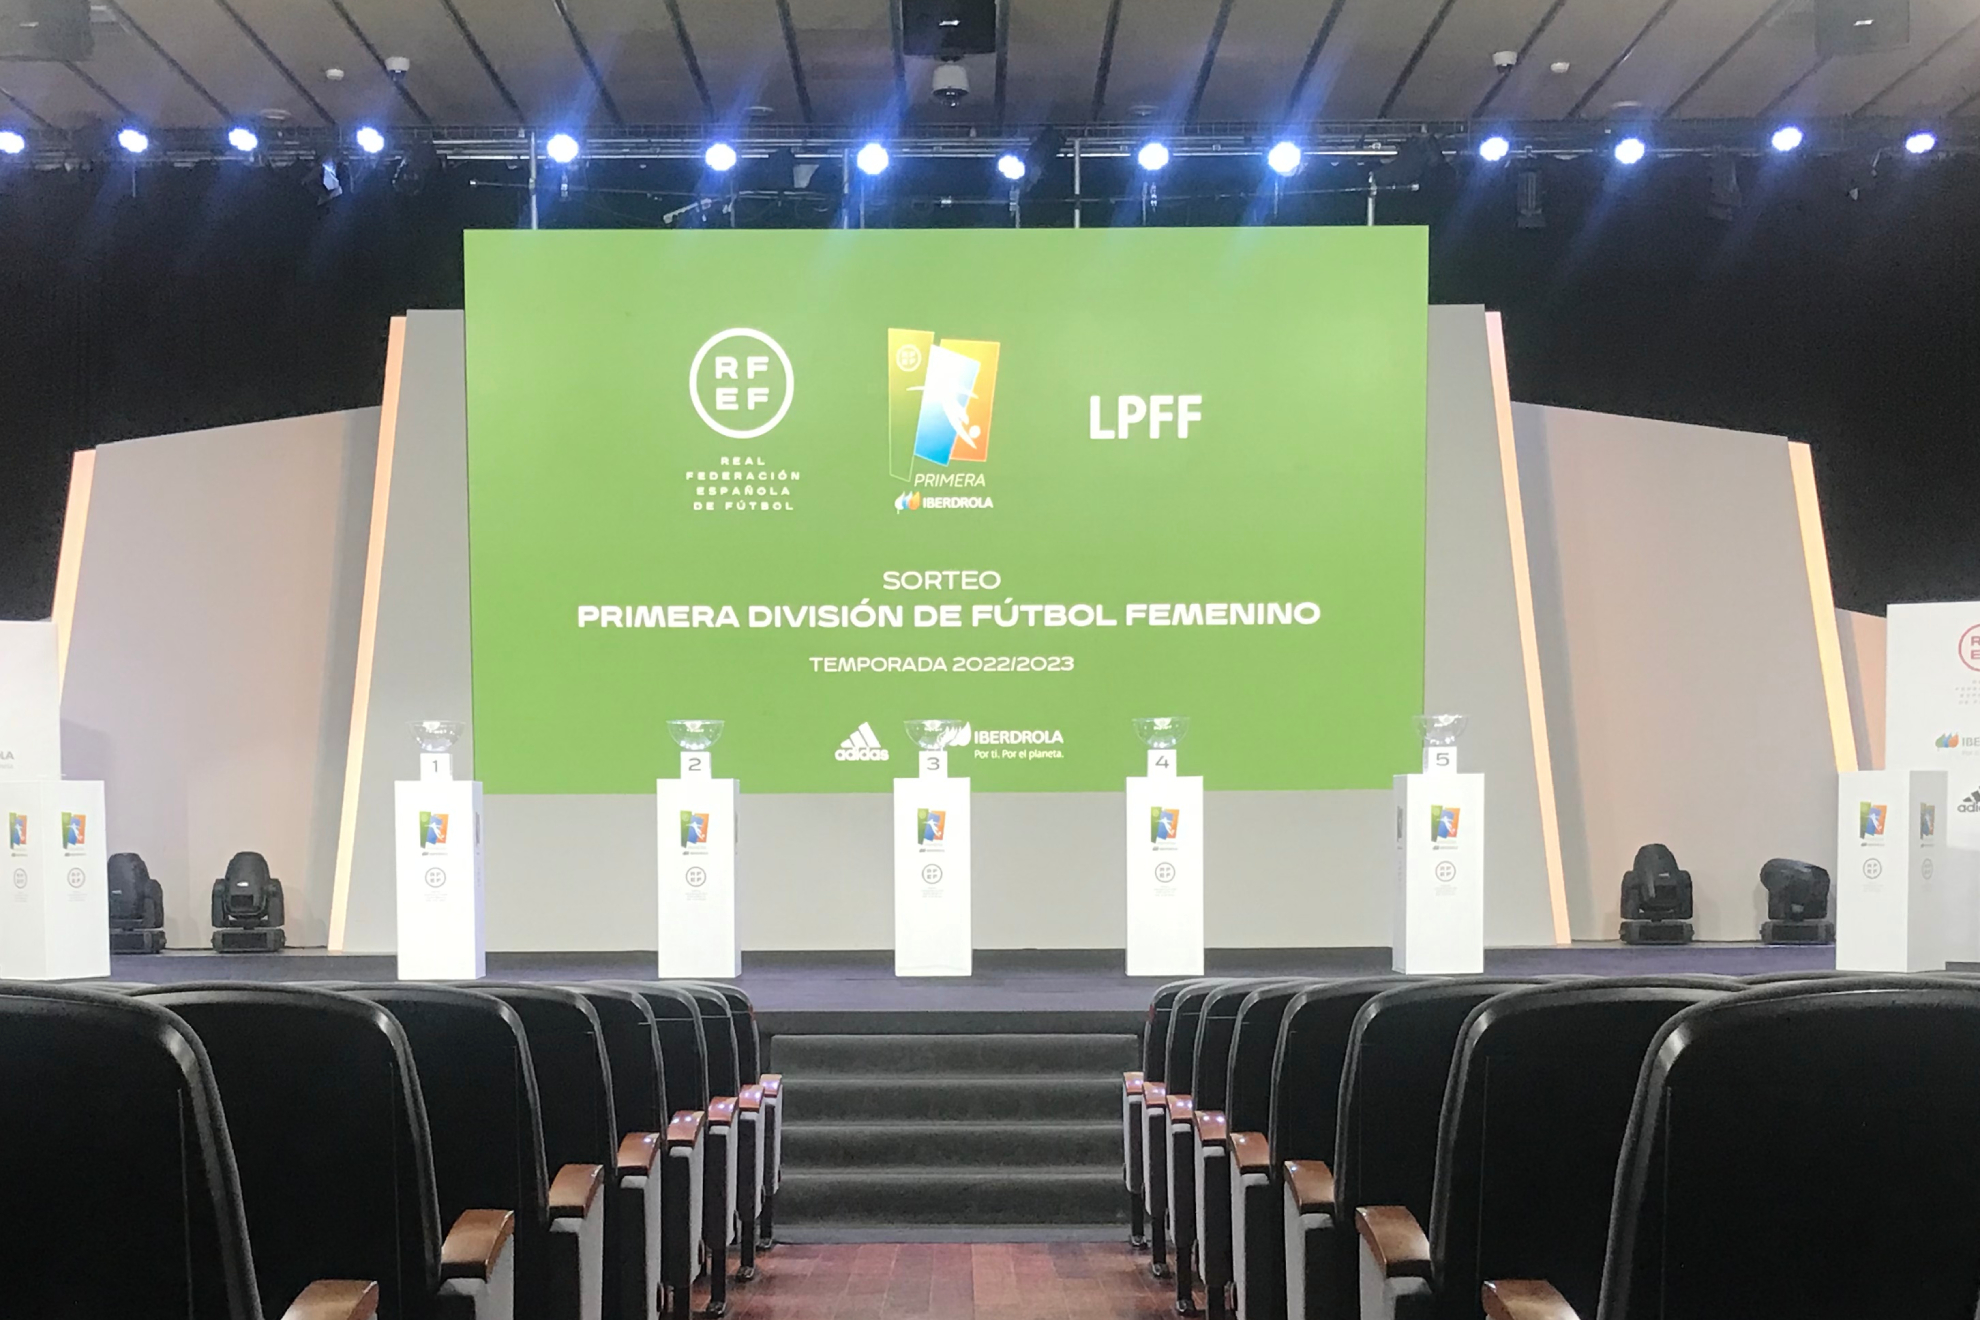 La sala Luis Aragons de la Ciudad del Ftbol / RFEF